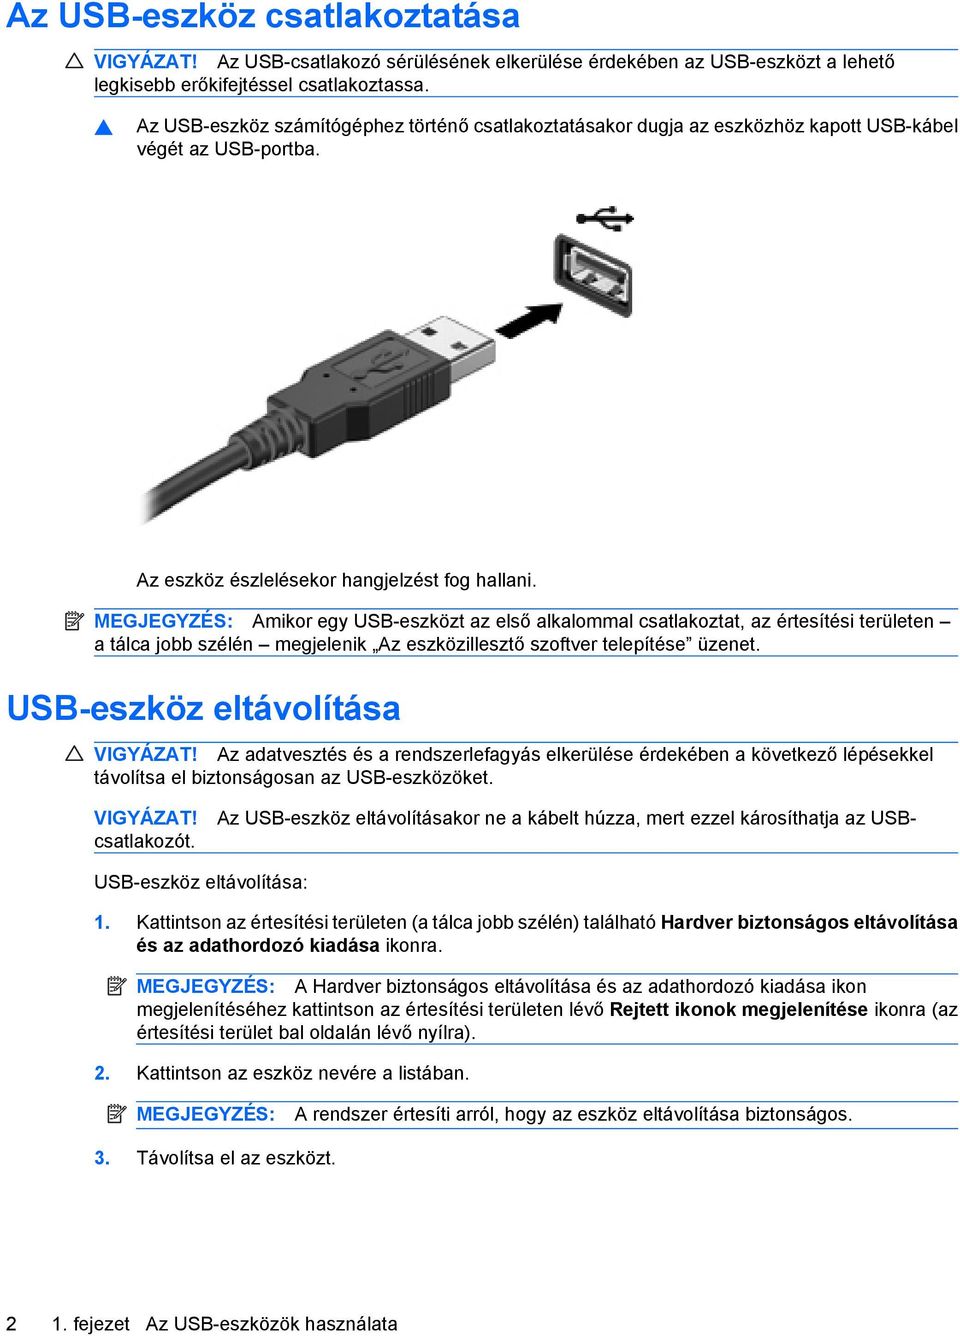 MEGJEGYZÉS: Amikor egy USB-eszközt az első alkalommal csatlakoztat, az értesítési területen a tálca jobb szélén megjelenik Az eszközillesztő szoftver telepítése üzenet.